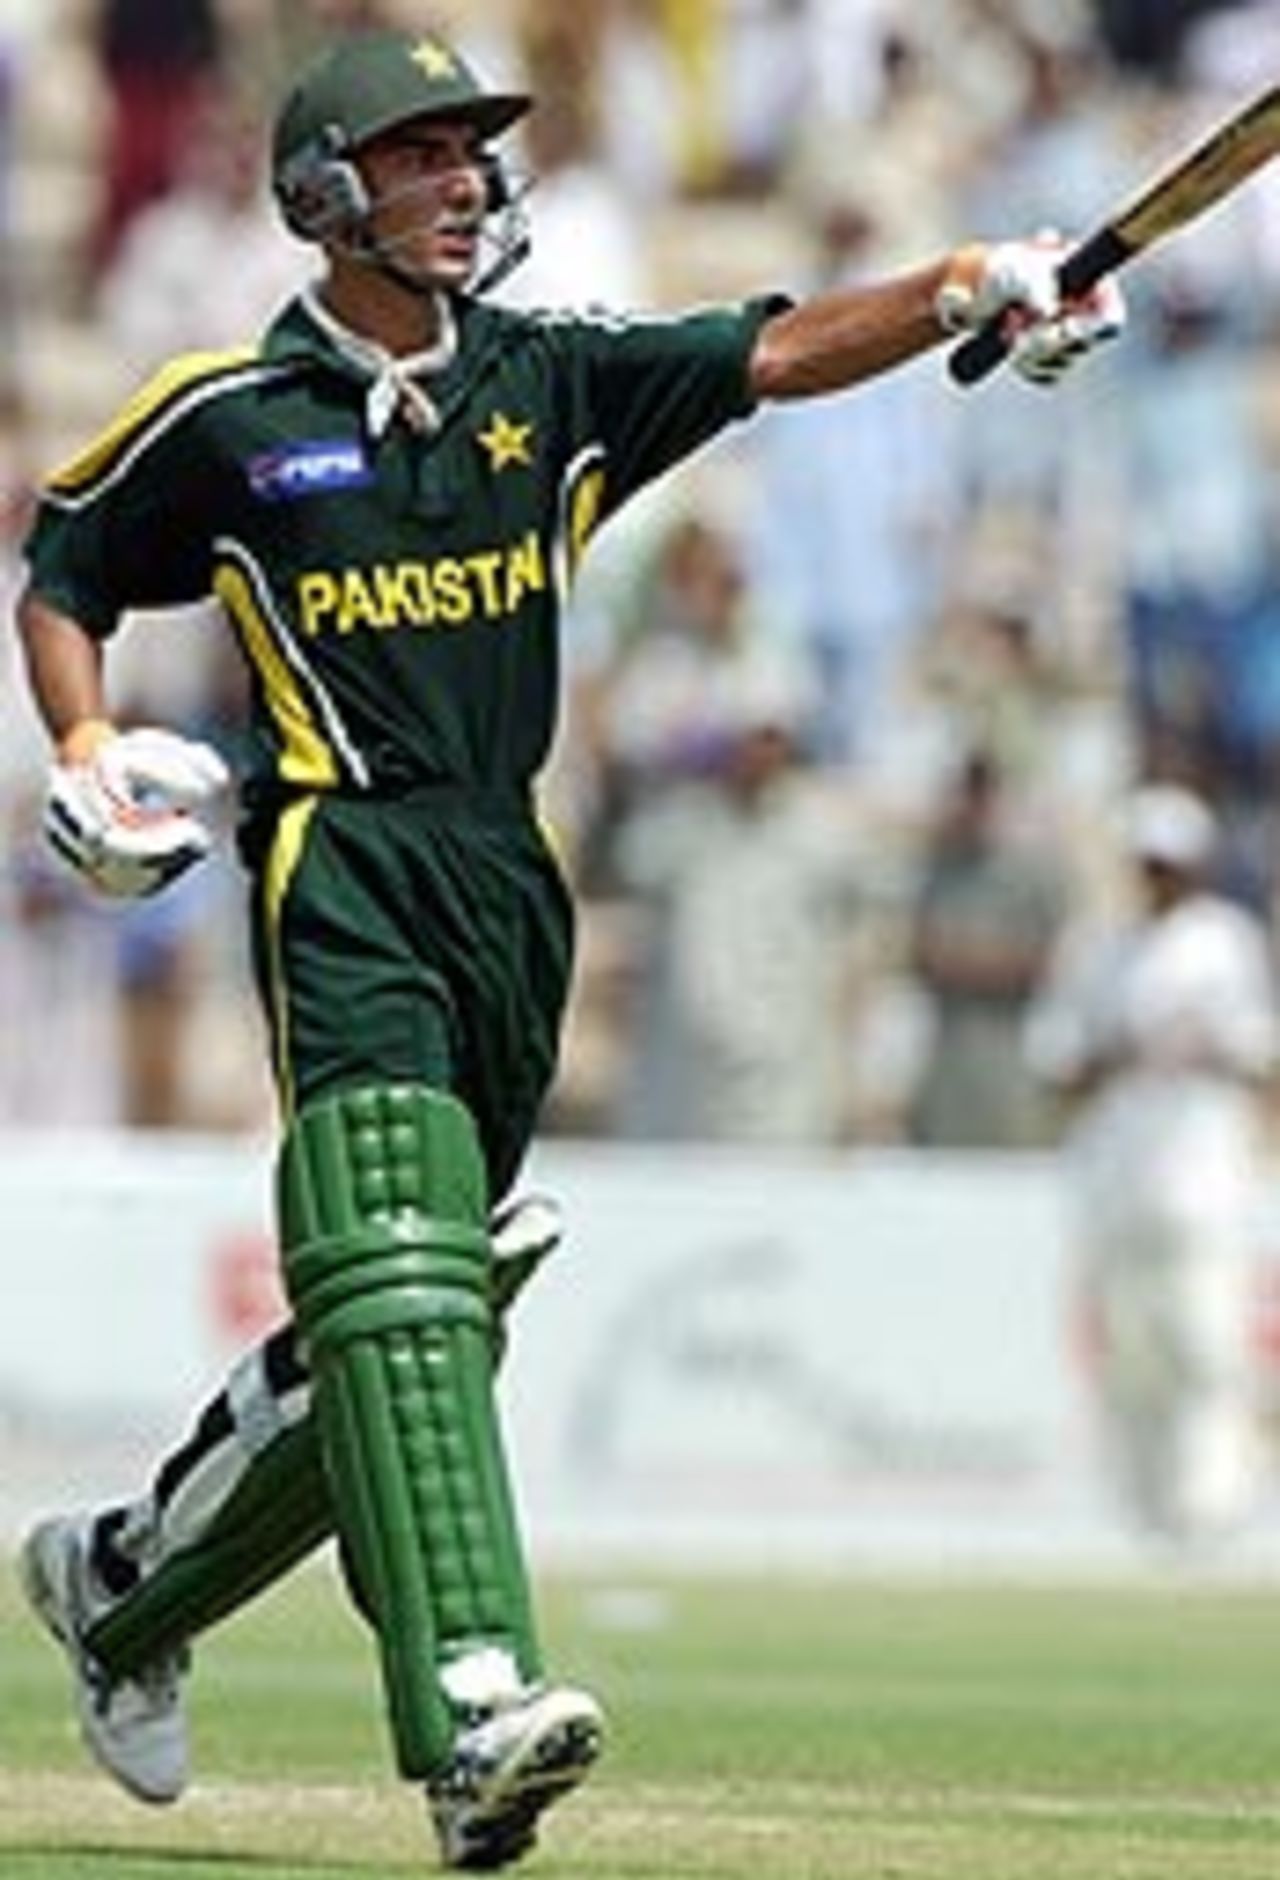 Yasir Hameed celebrates after scoring his first ODI century, Pakistan v Bangladesh, 1st ODI, Multan, September 9, 2003